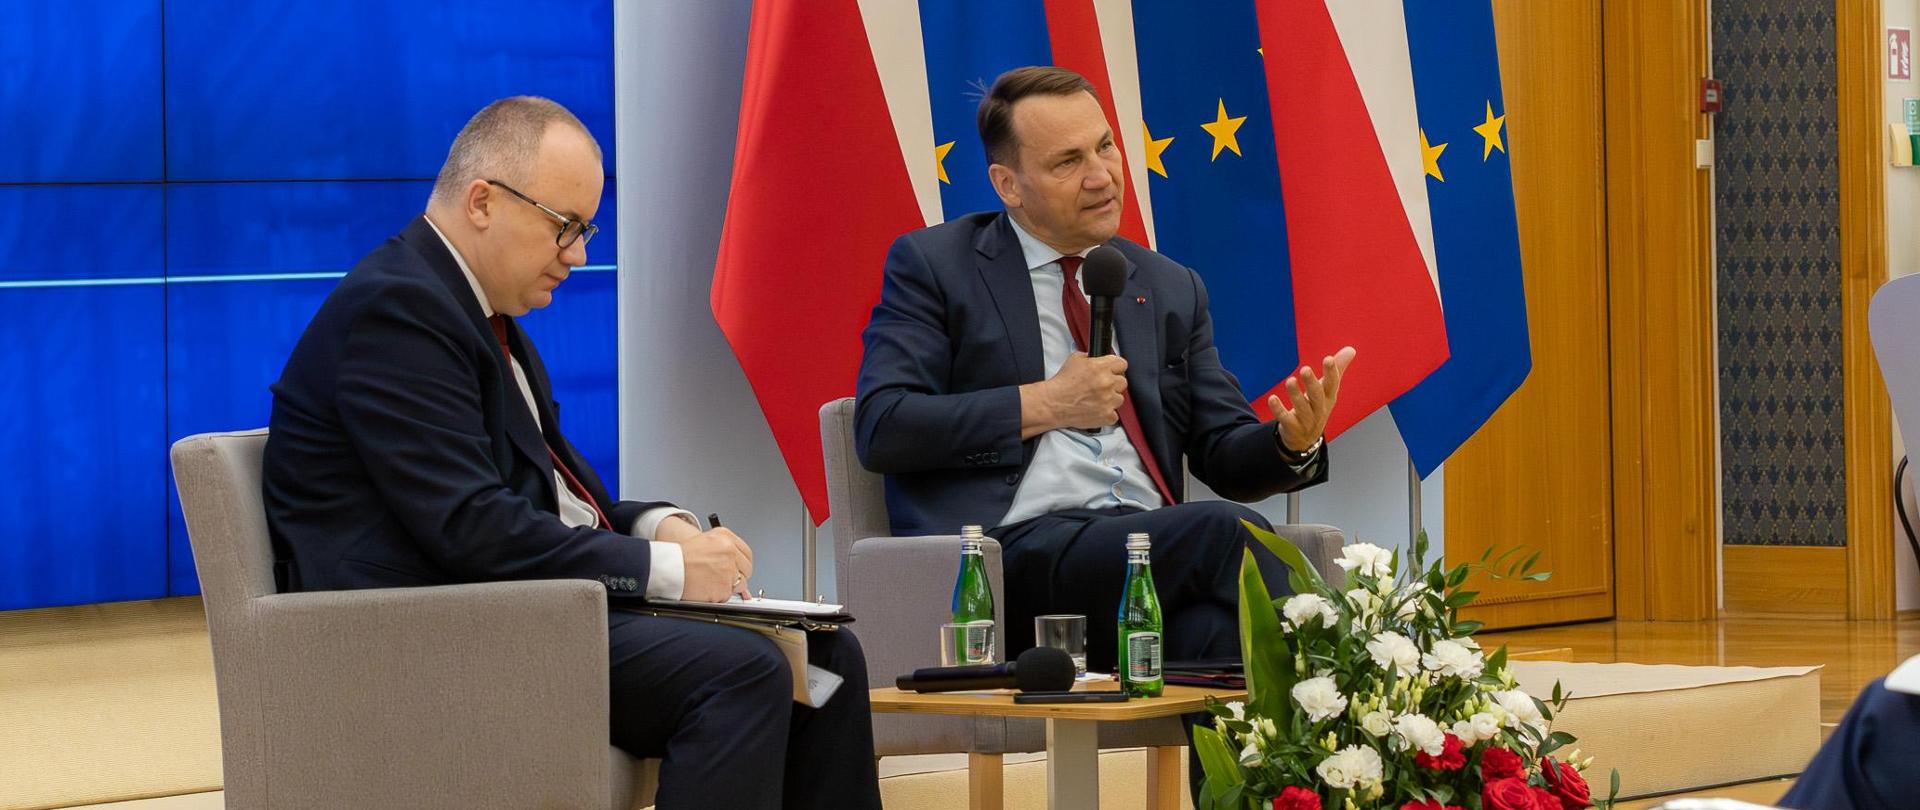 Briefing Ministra Spraw Zagranicznych i Ministra Sprawiedliwości nt. przywracania praworządności i porządku konstytucyjnego w Polsce 